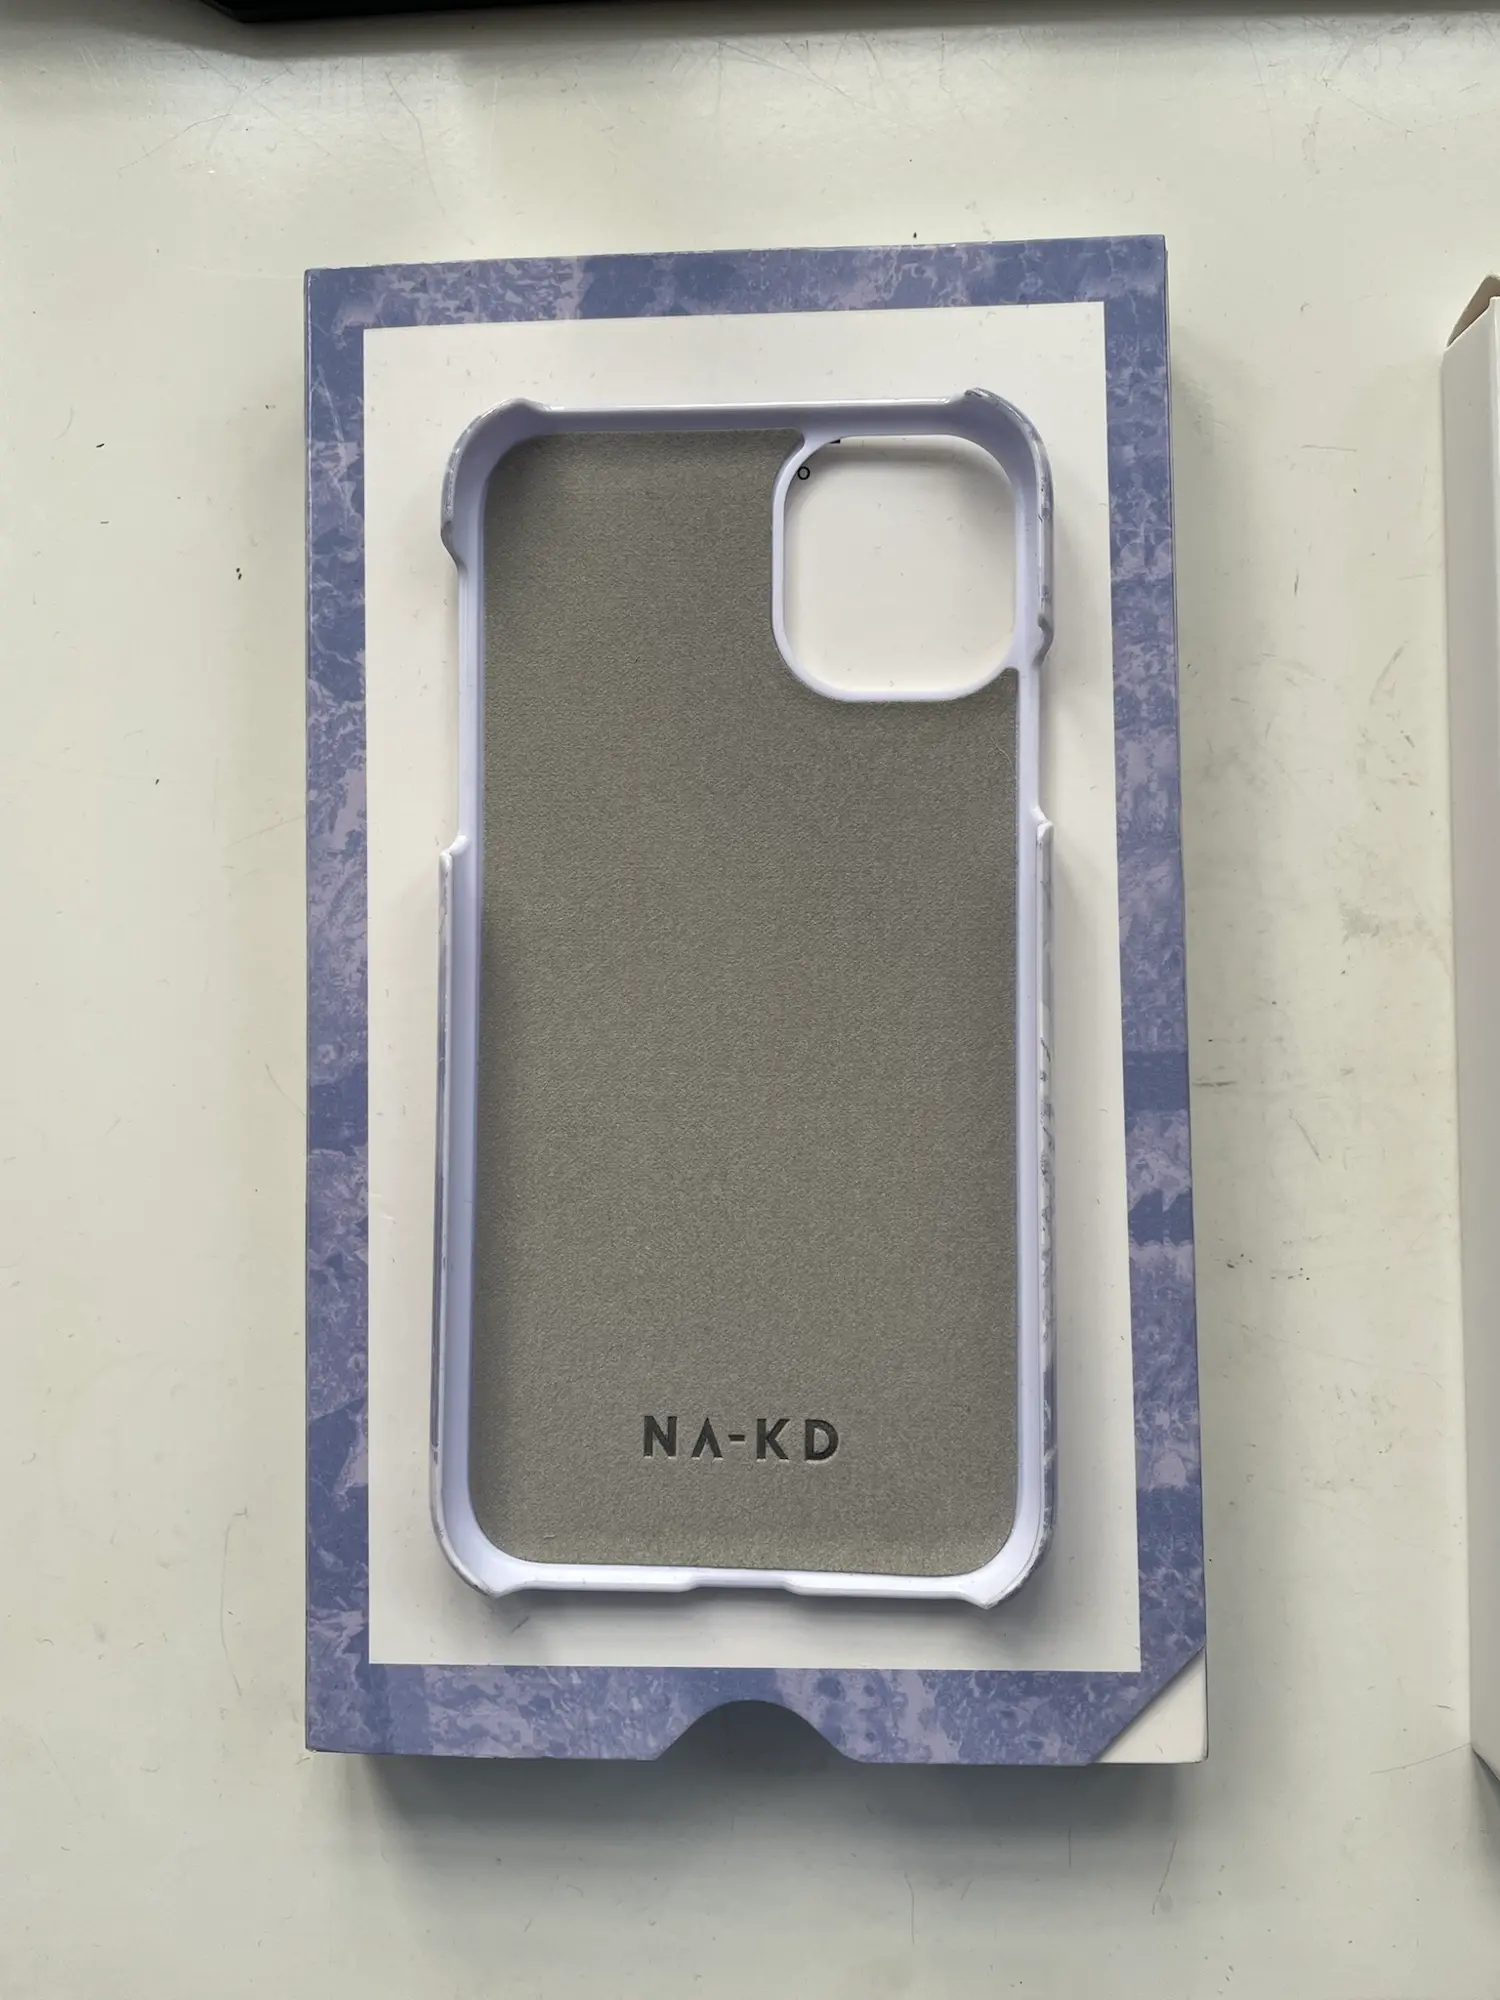 Na-kd iphone